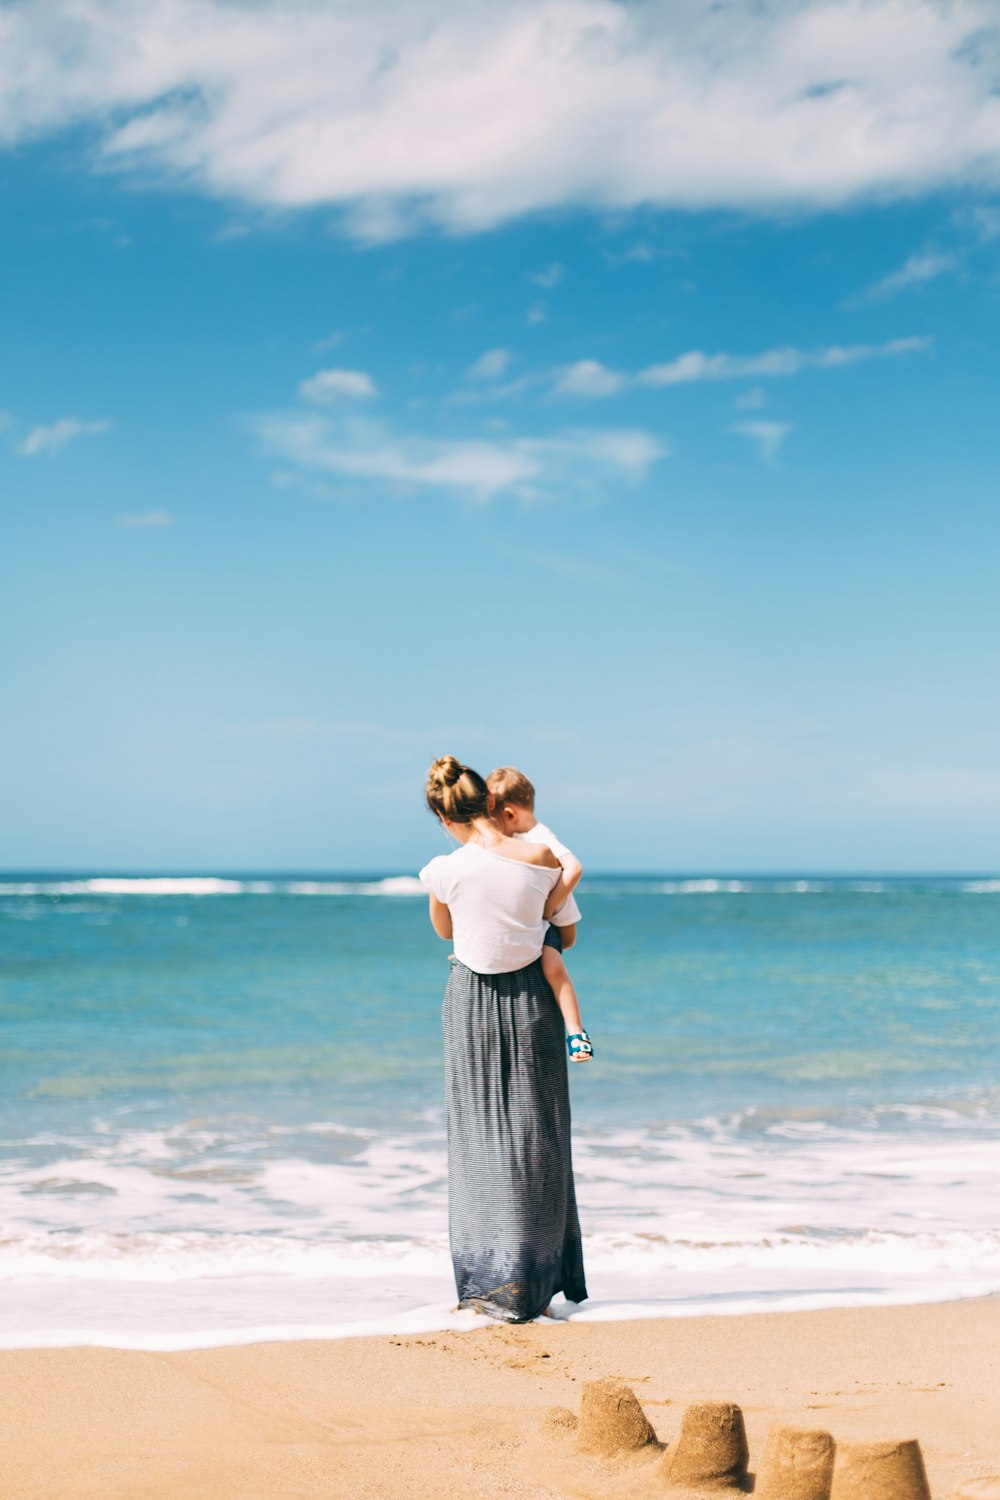 바닷가에 유아를 안고 있는 여자